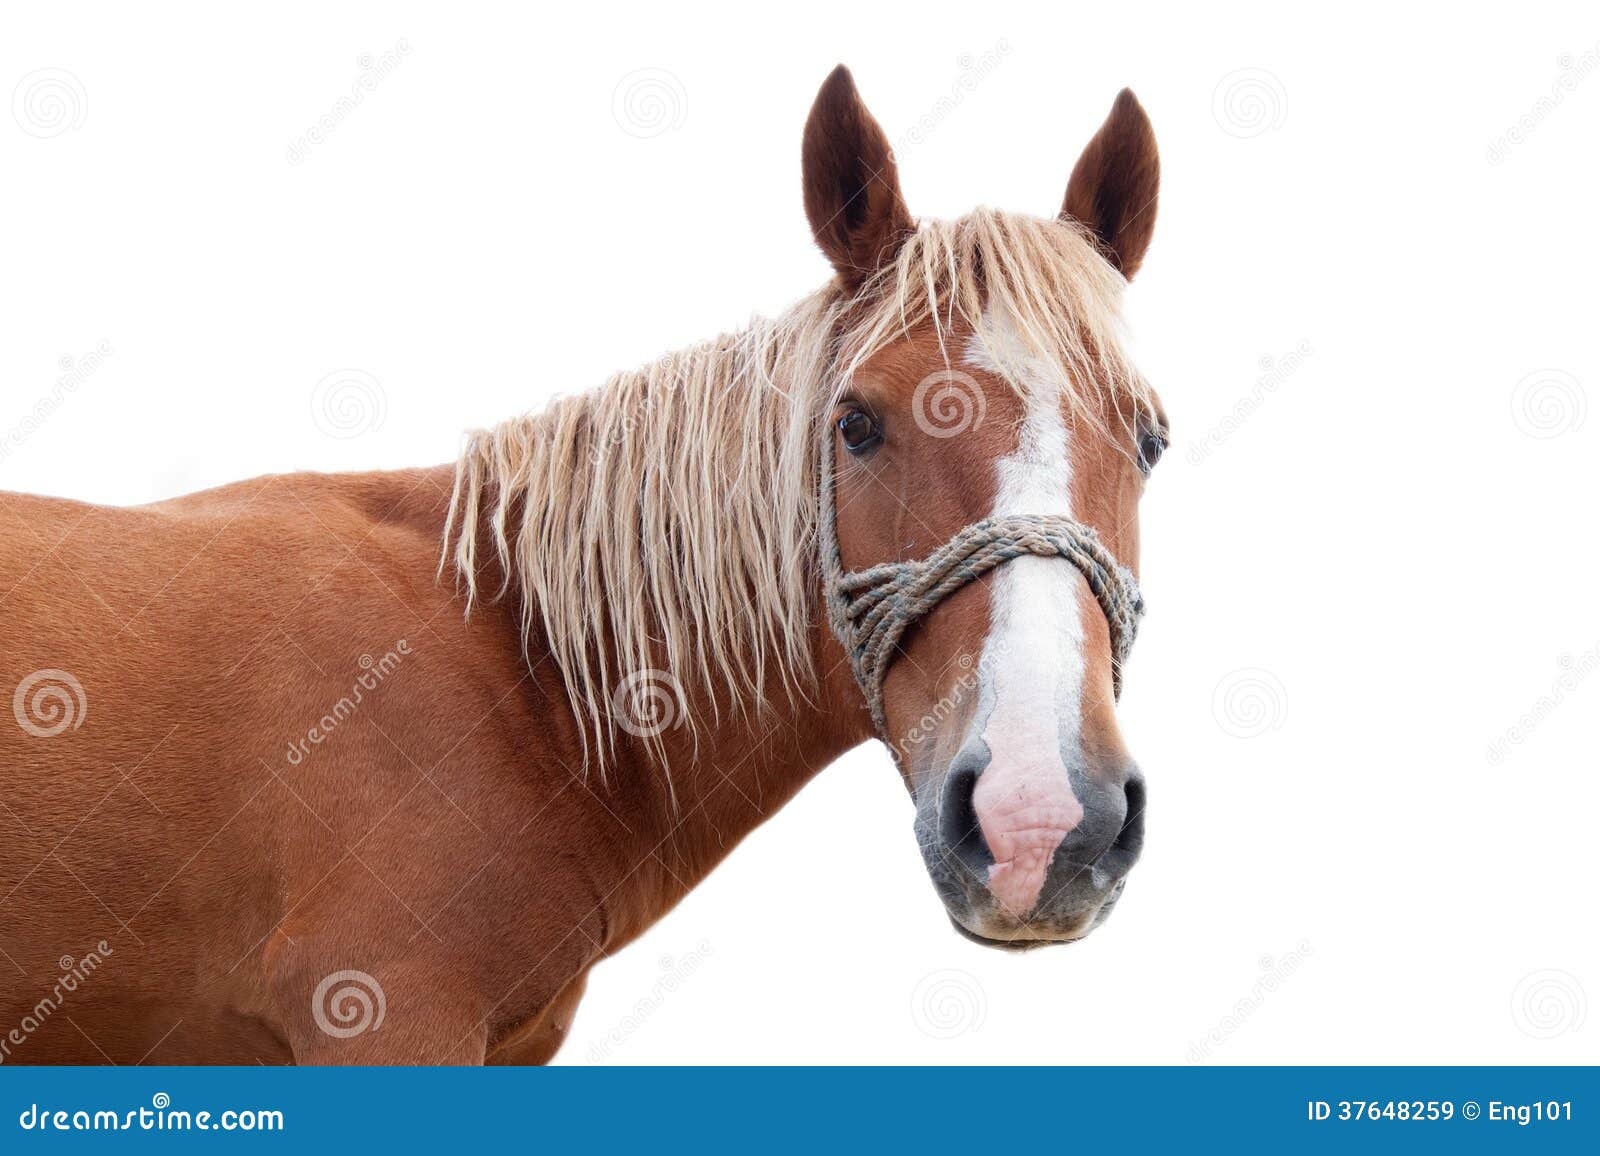 Blond Horse Markings - wide 2